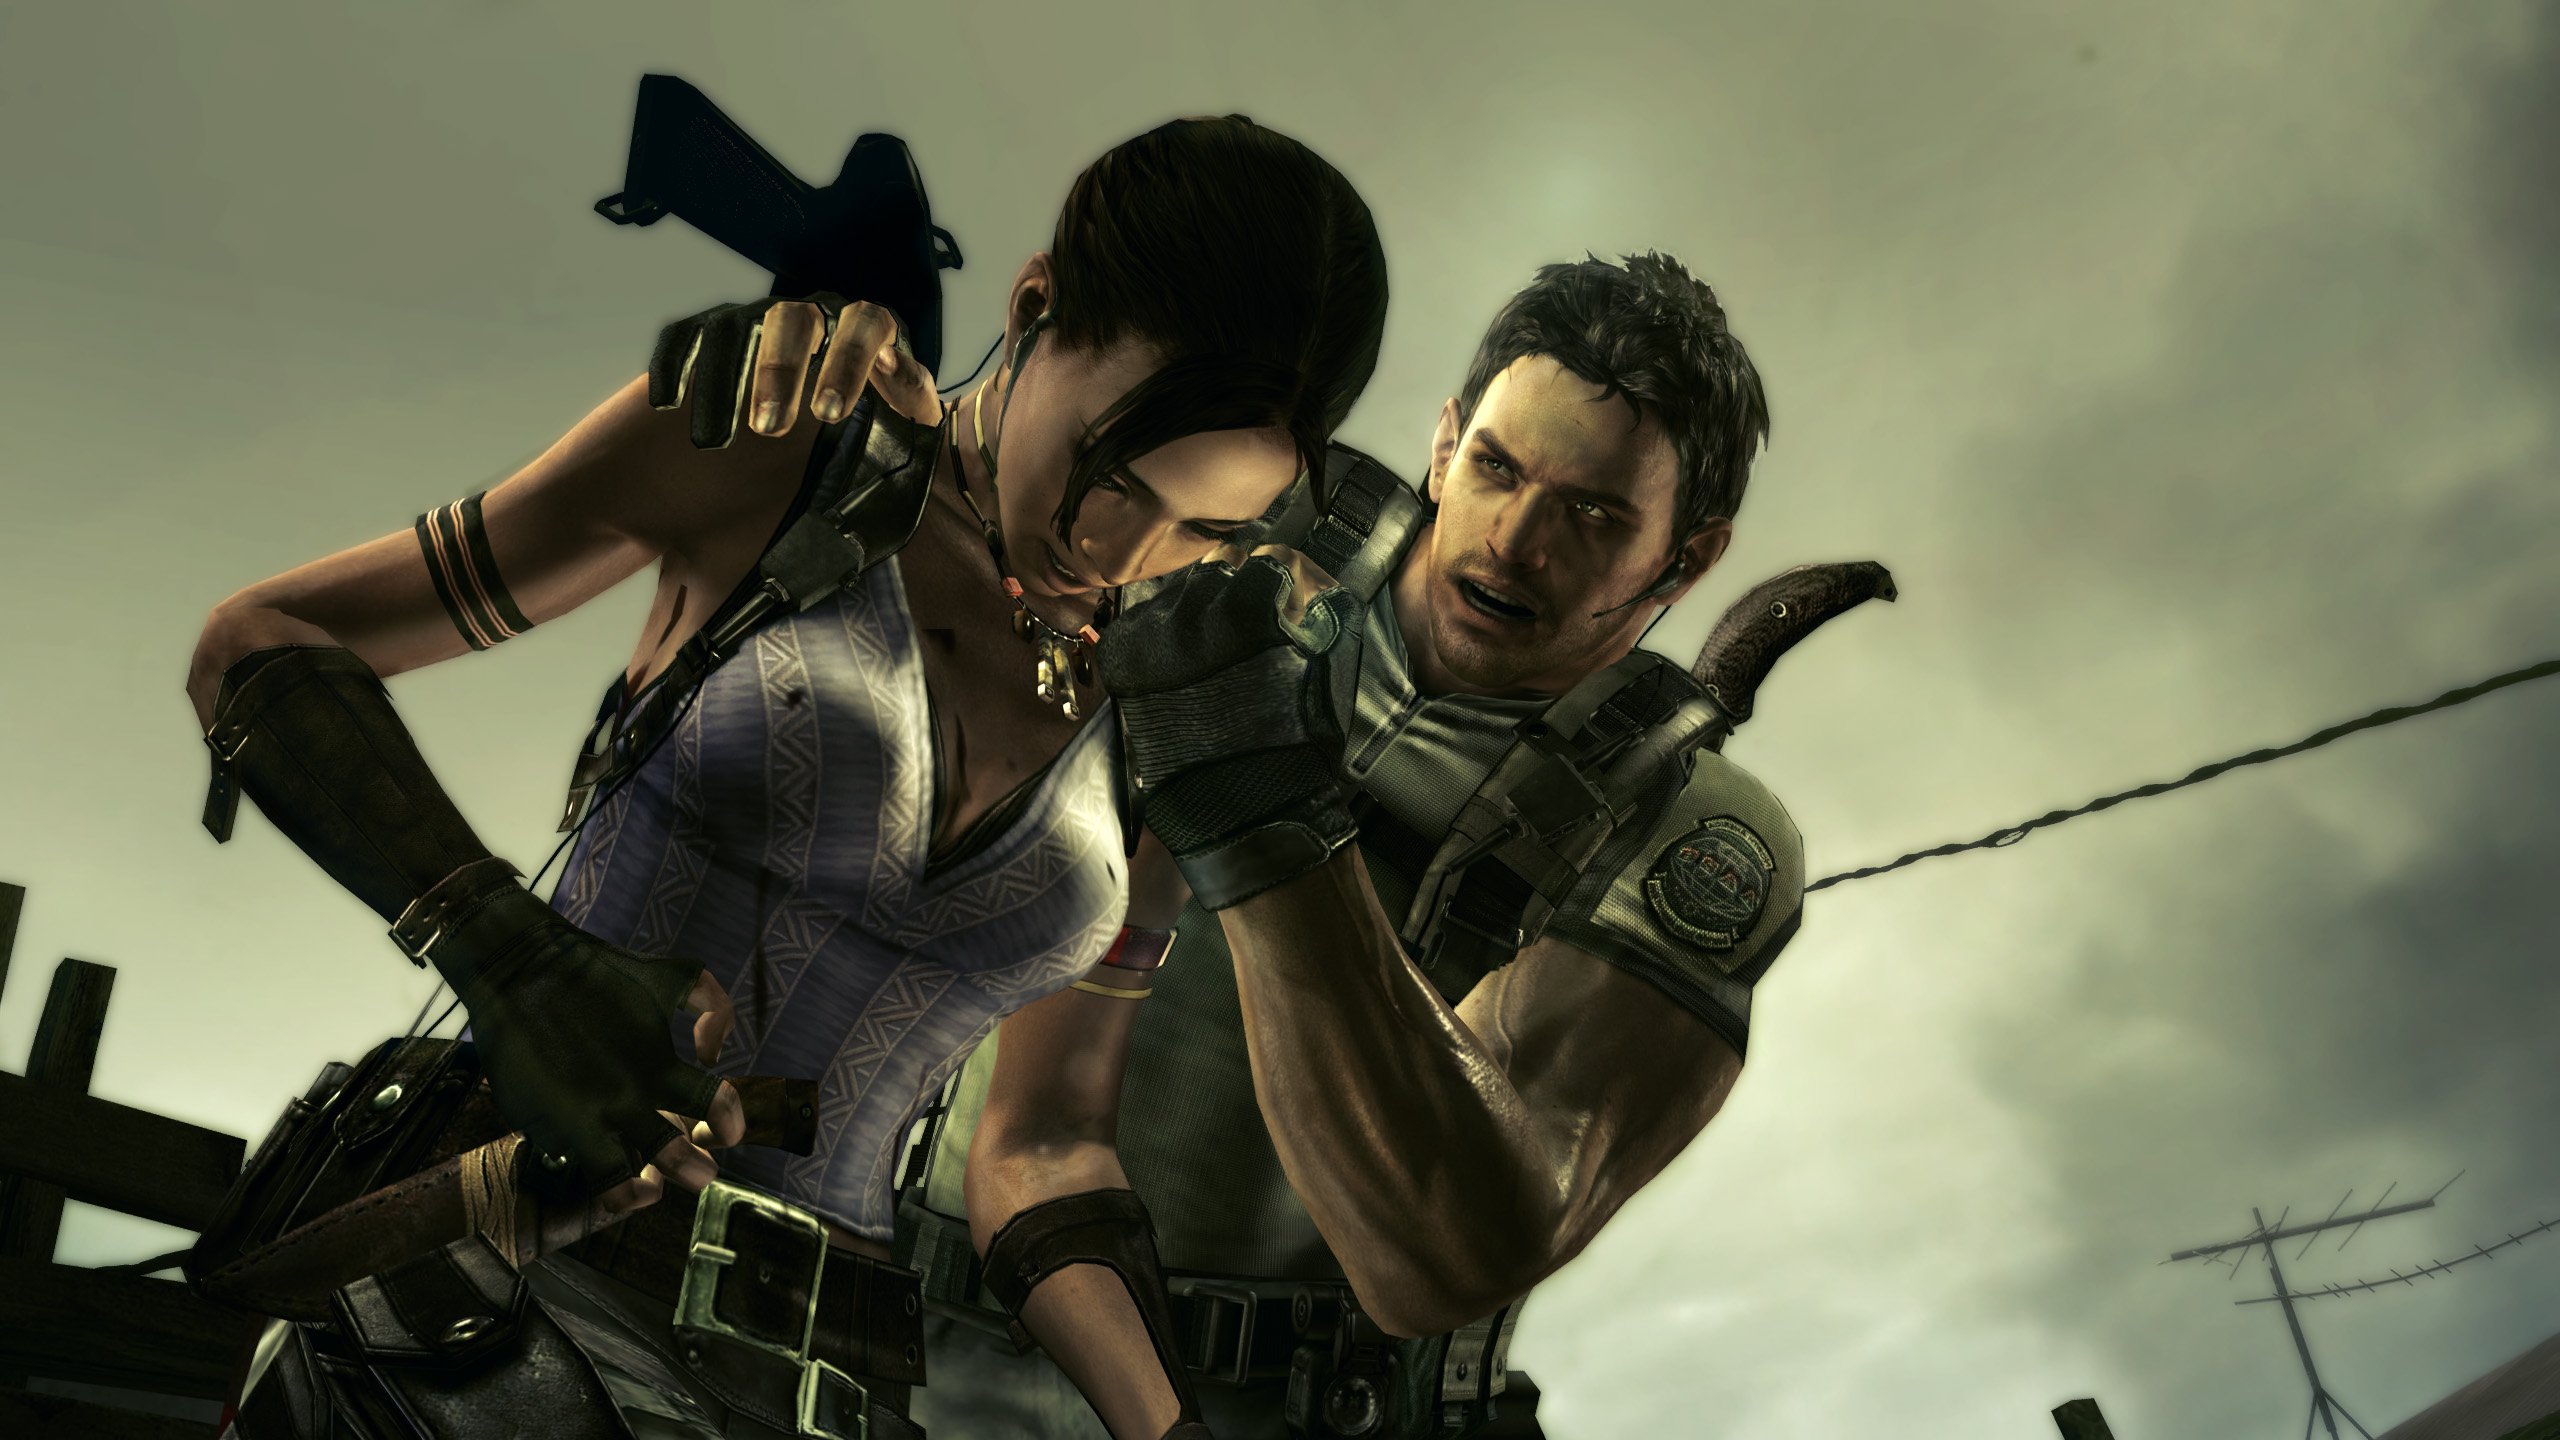 Vocês acham que Resident Evil 5 e 6 precisam de Remake? : r/gamesEcultura